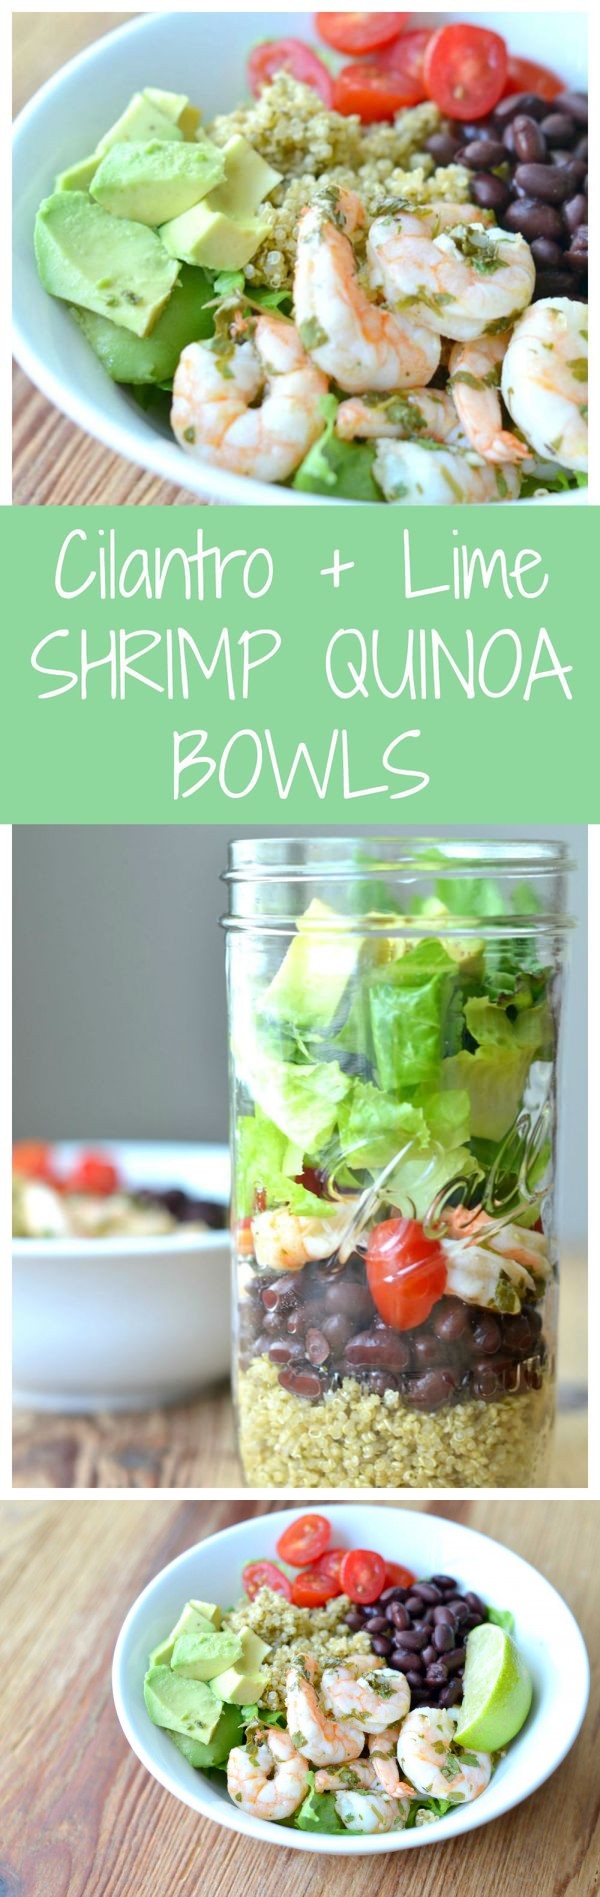 Cilantro Lime Shrimp Quinoa Bowls